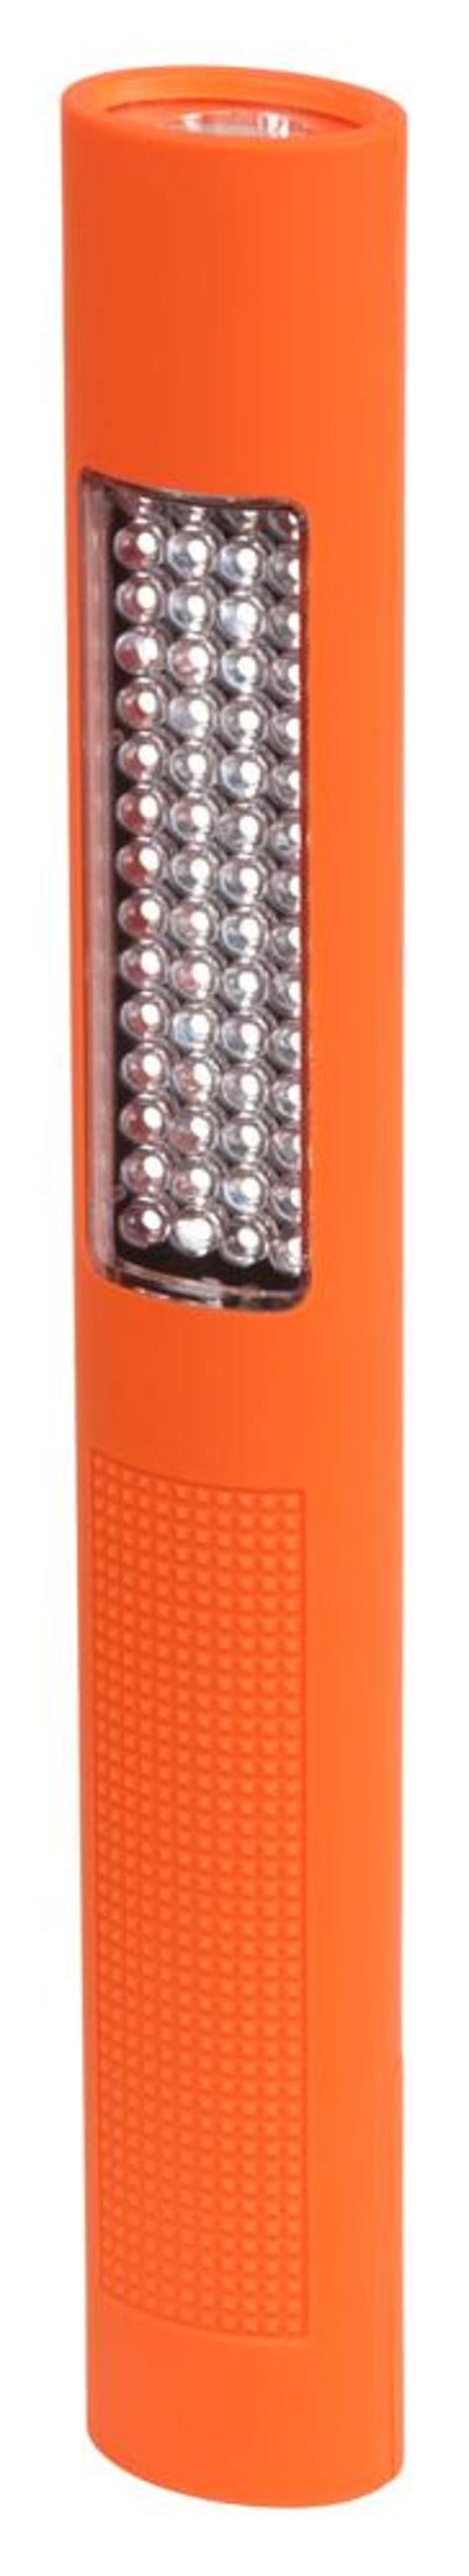 Nightstick NSP-1260 Multi-Purpose LED Flashlight, Orange - Walmart.com